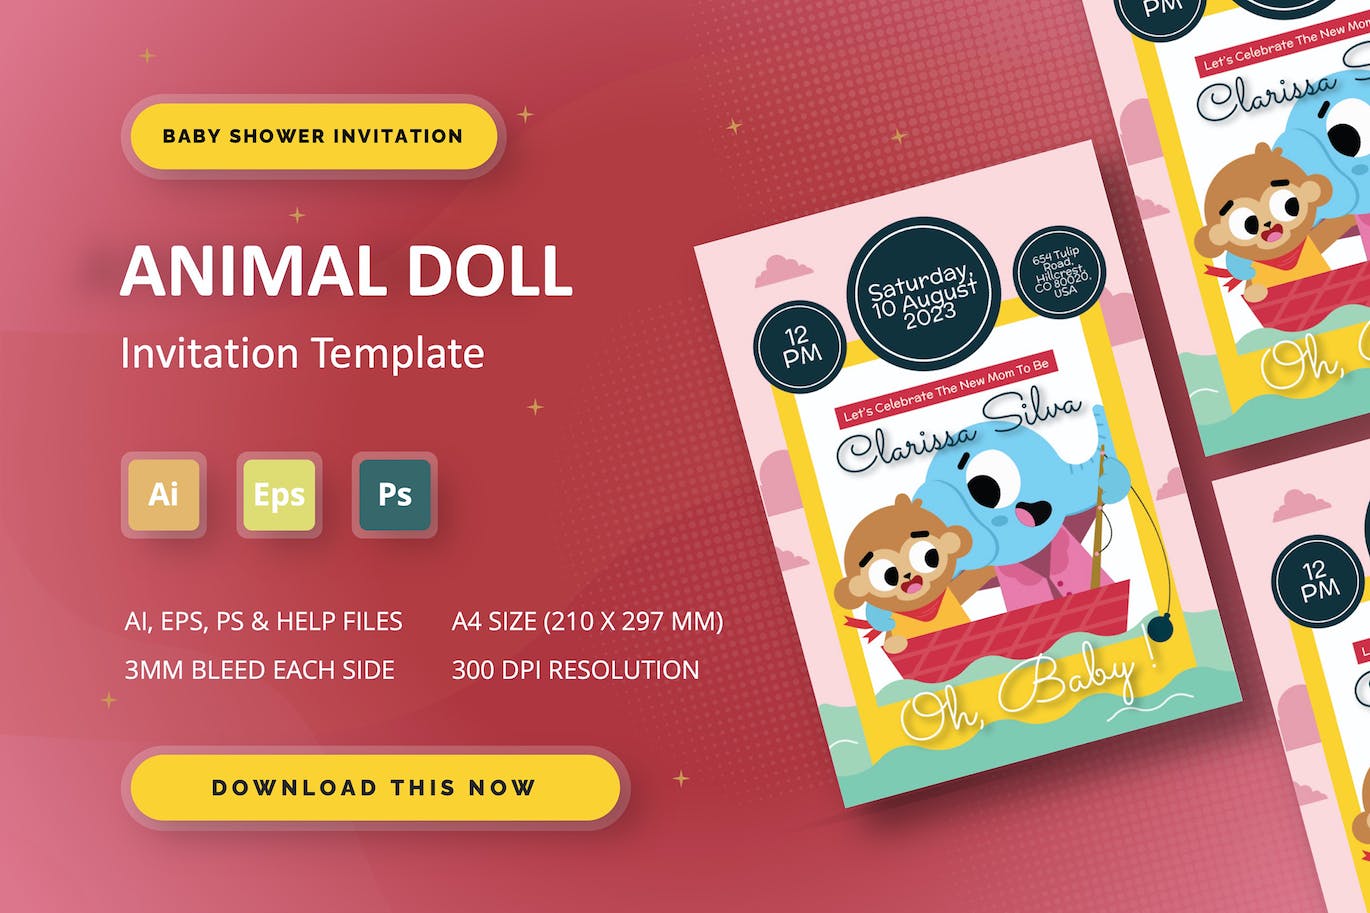 新生婴儿满月/百日宴请柬模板素材 Animal Doll – Baby Shower Invitation